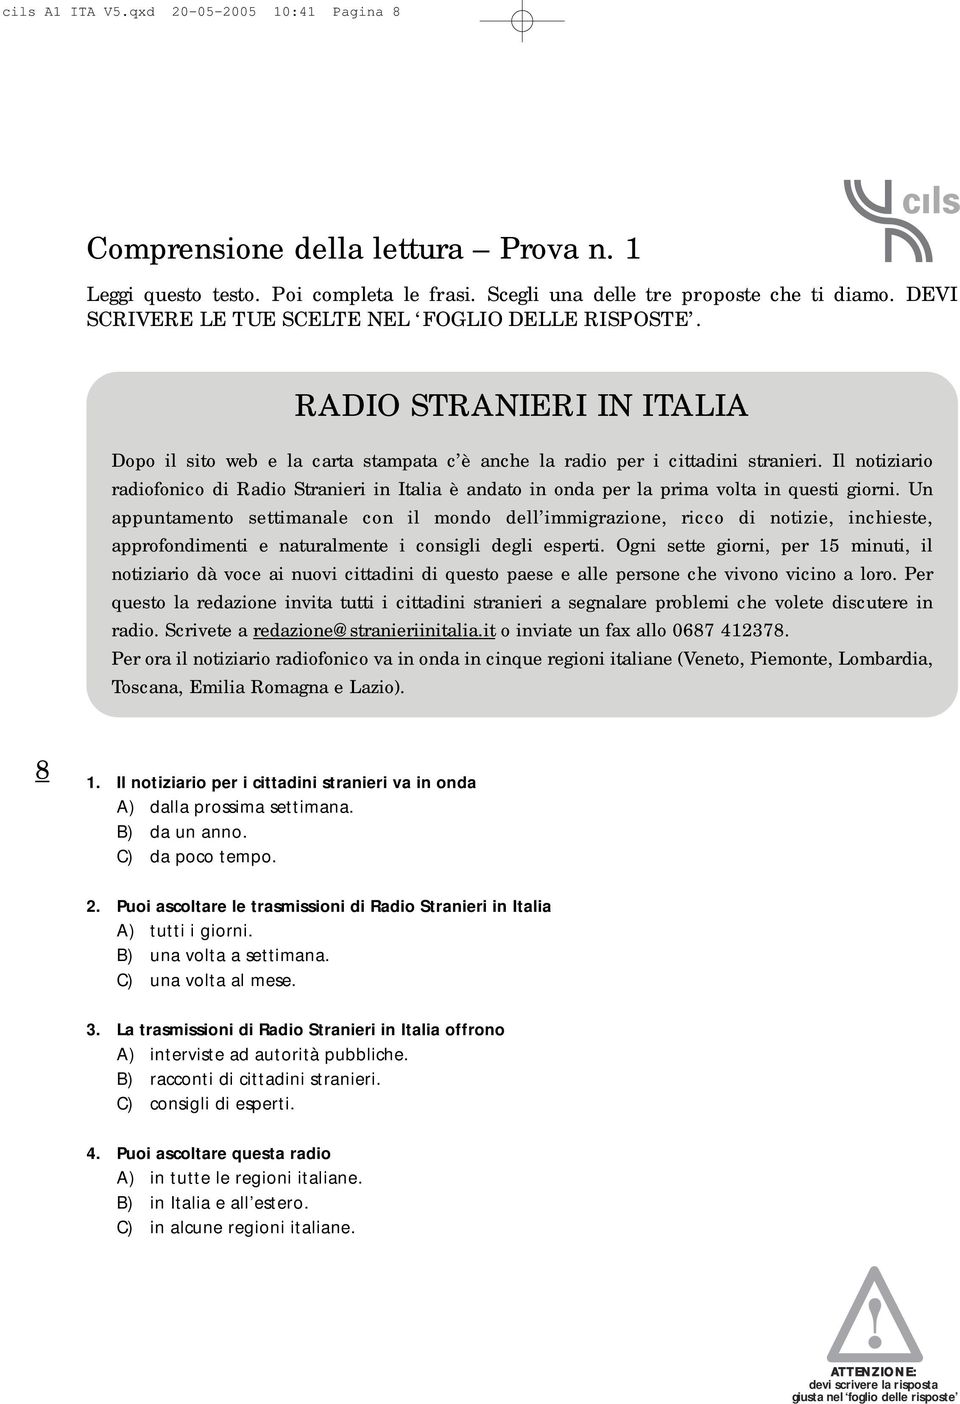 Il notiziario radiofonico di Radio Stranieri in Italia è andato in onda per la prima volta in questi giorni.